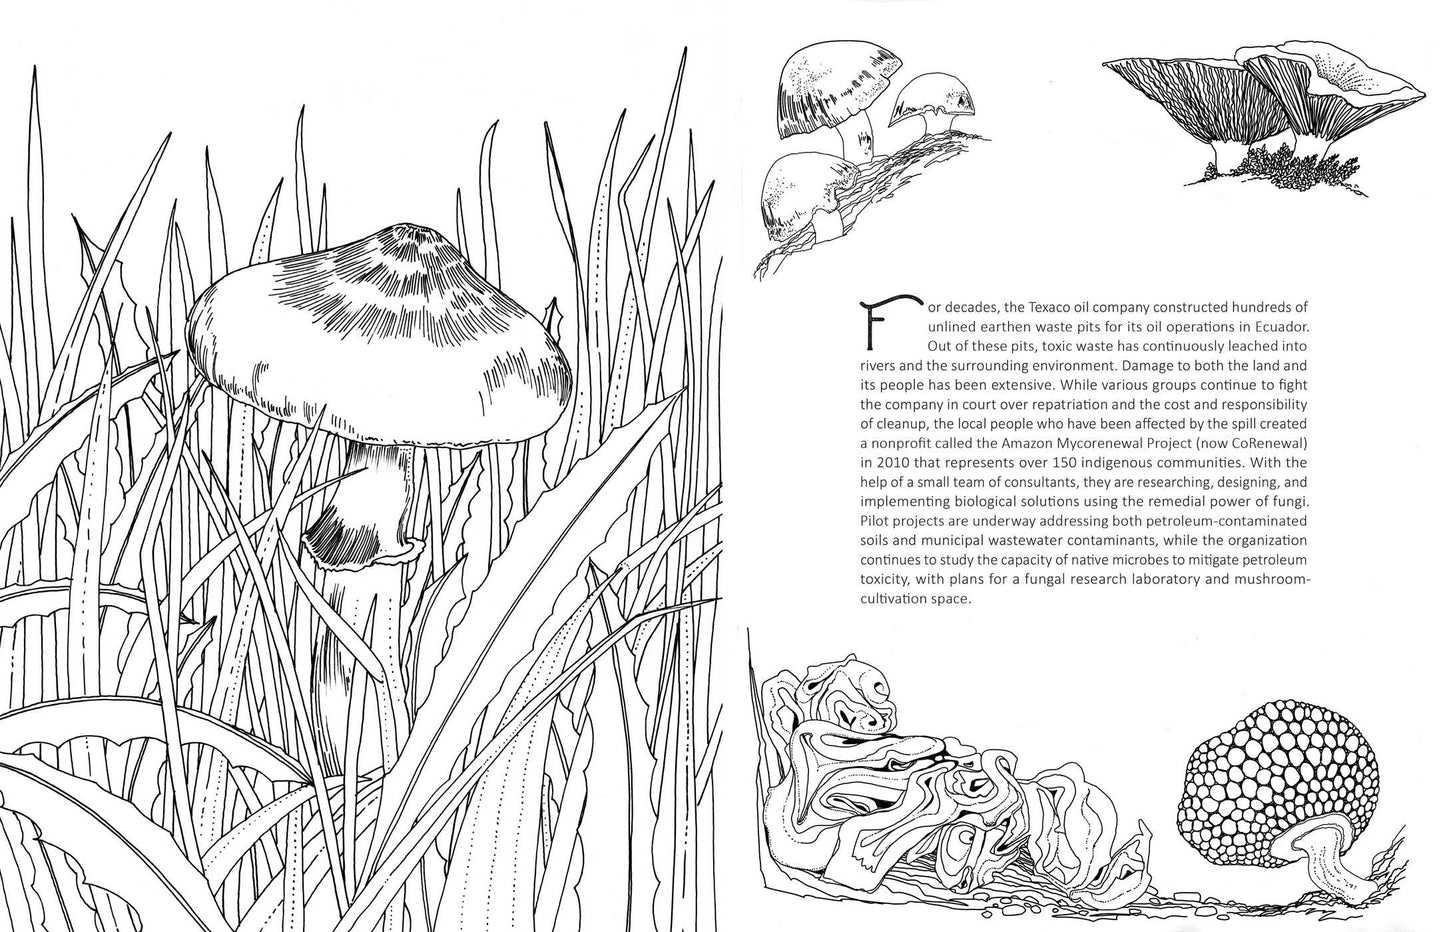 Coloring Book - Fantastic Fungi